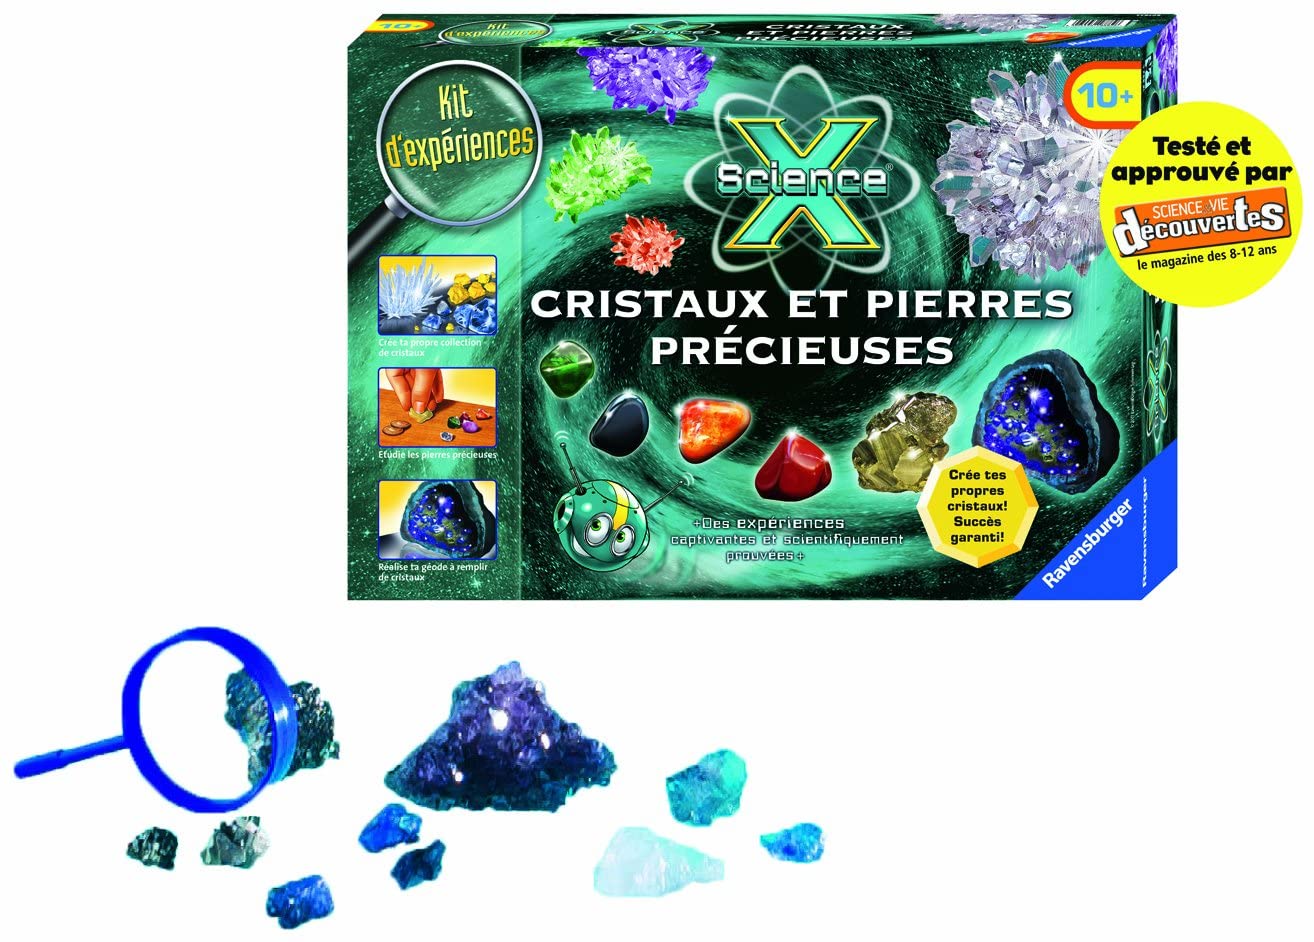 Science et jeu - cristaux et pierres precieuses